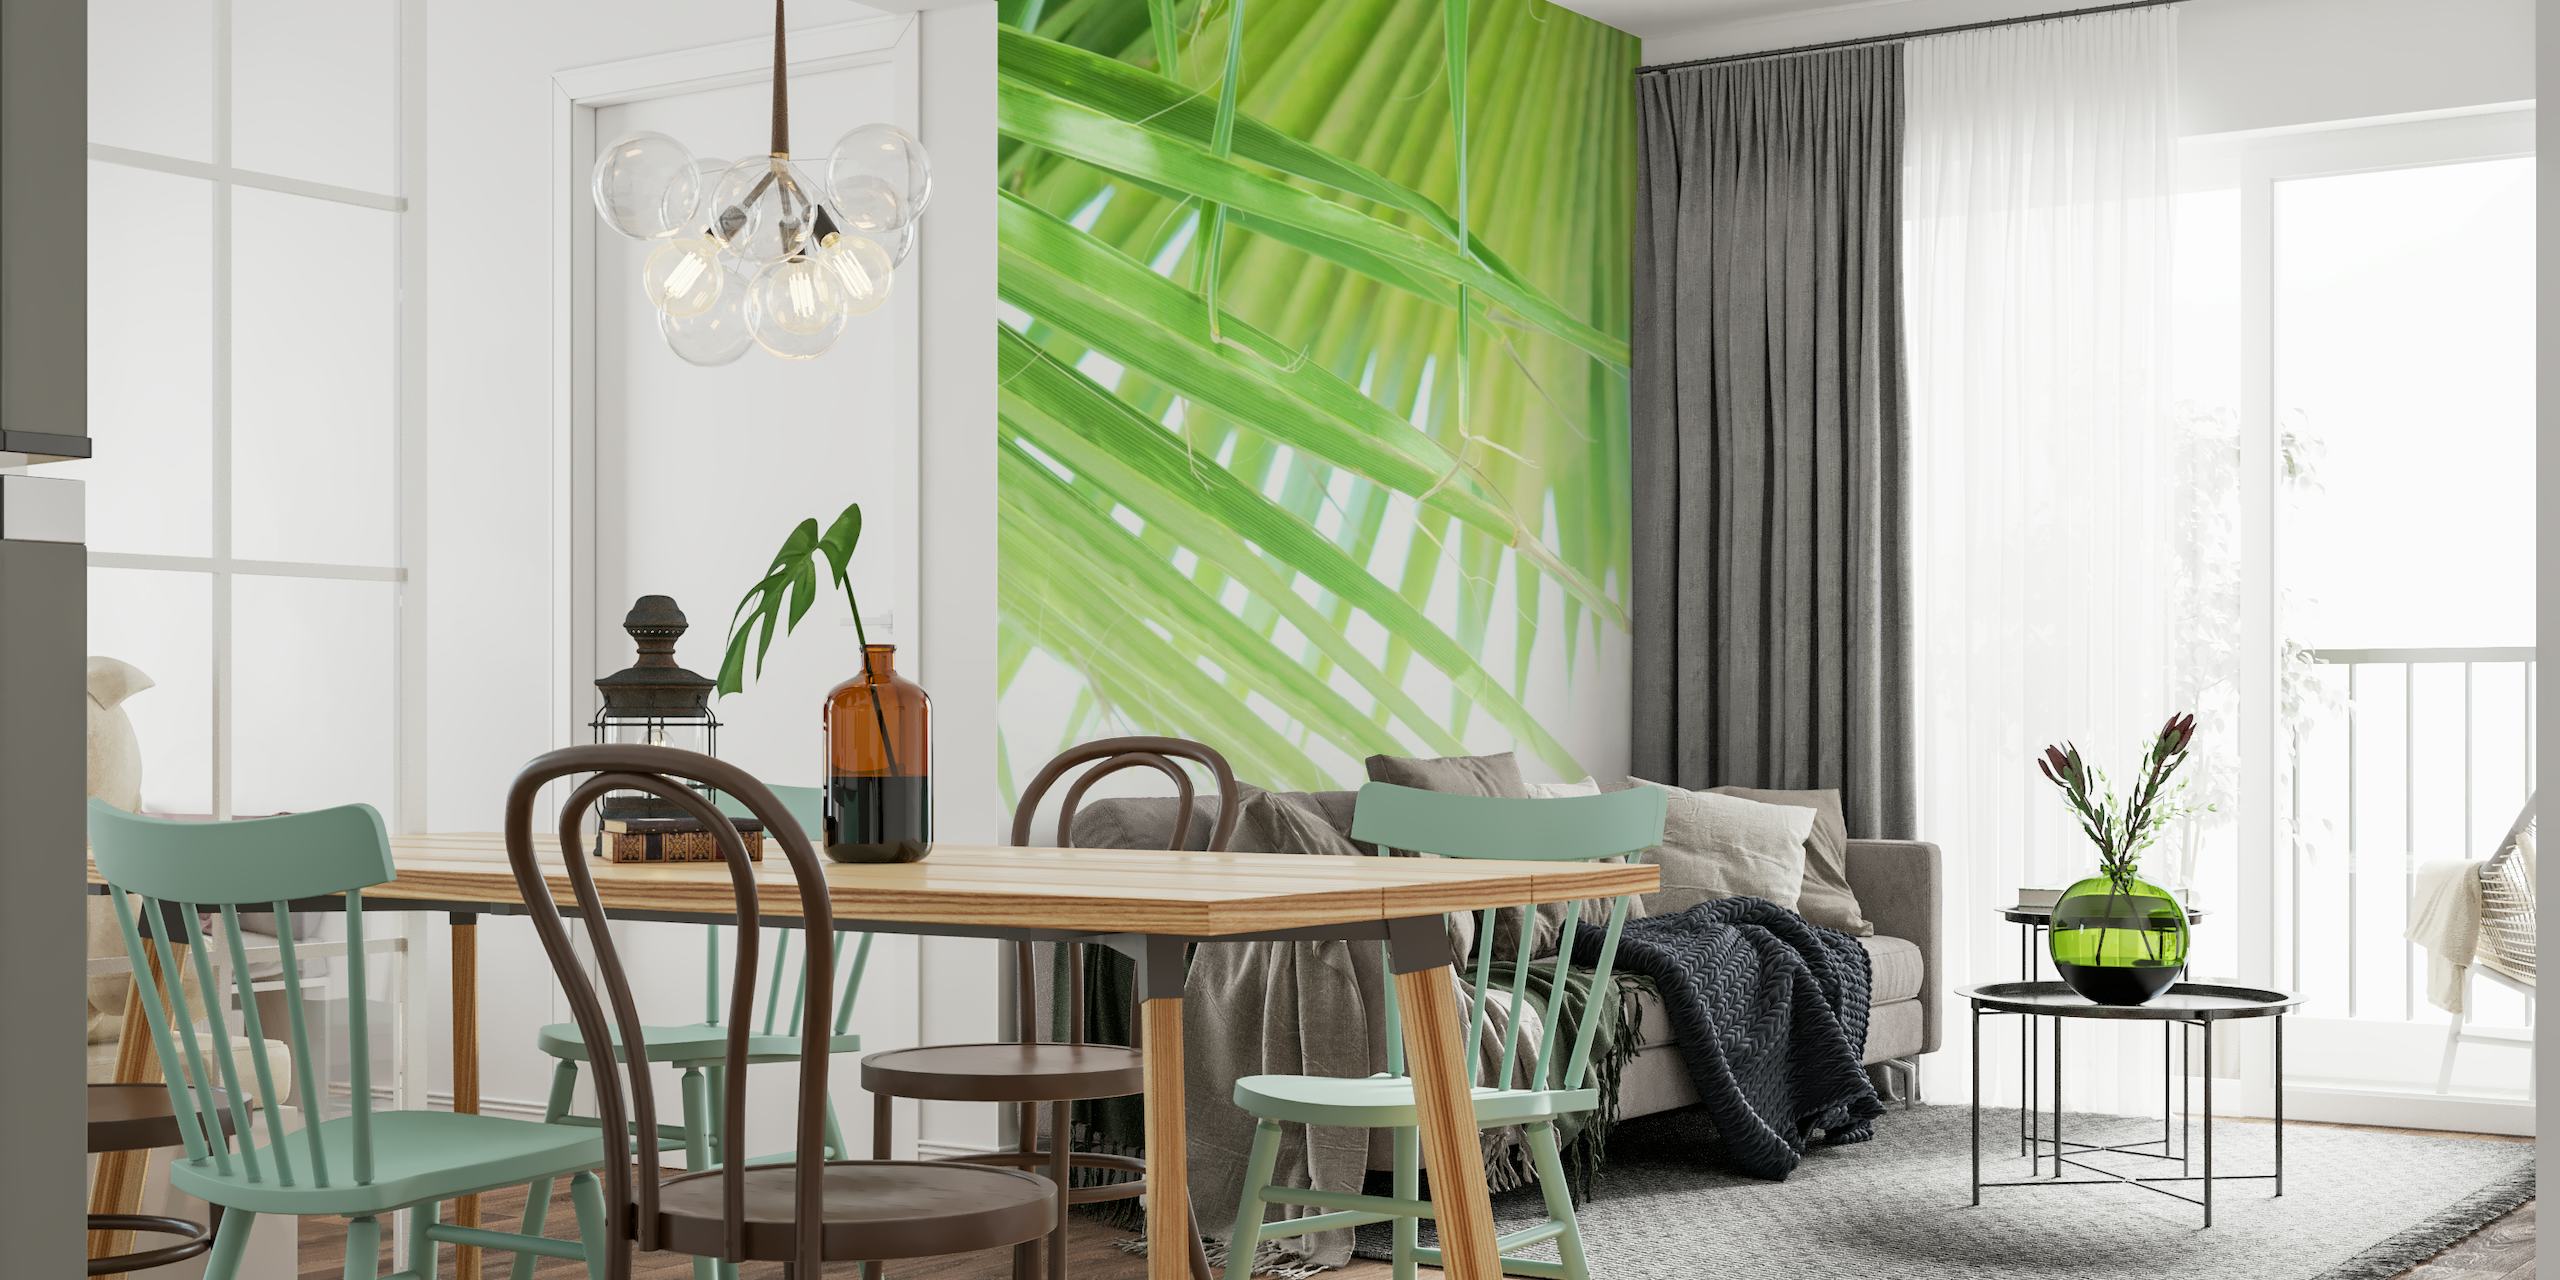 Fototapete mit grünen Fächerpalmenblättern für eine erfrischende Raumdekoration